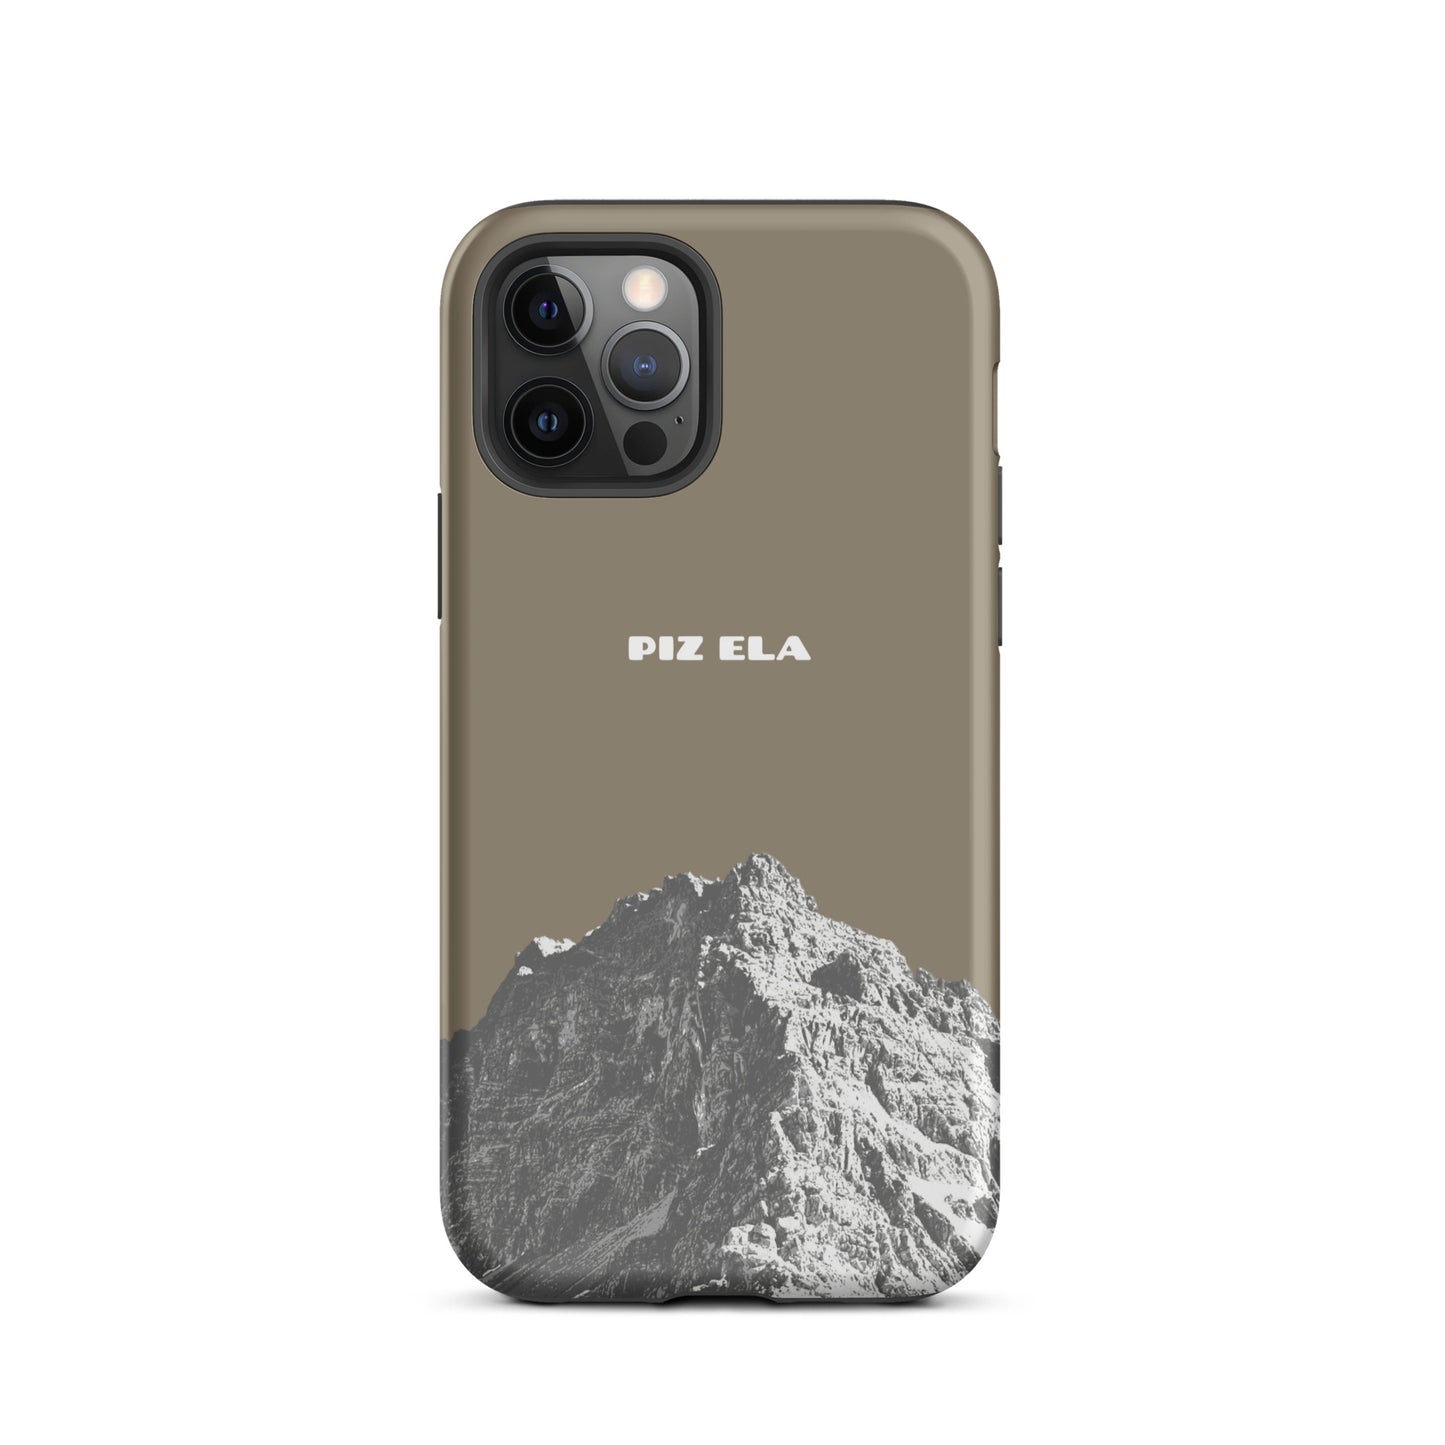 iPhone Case - Piz Ela - Graubraun